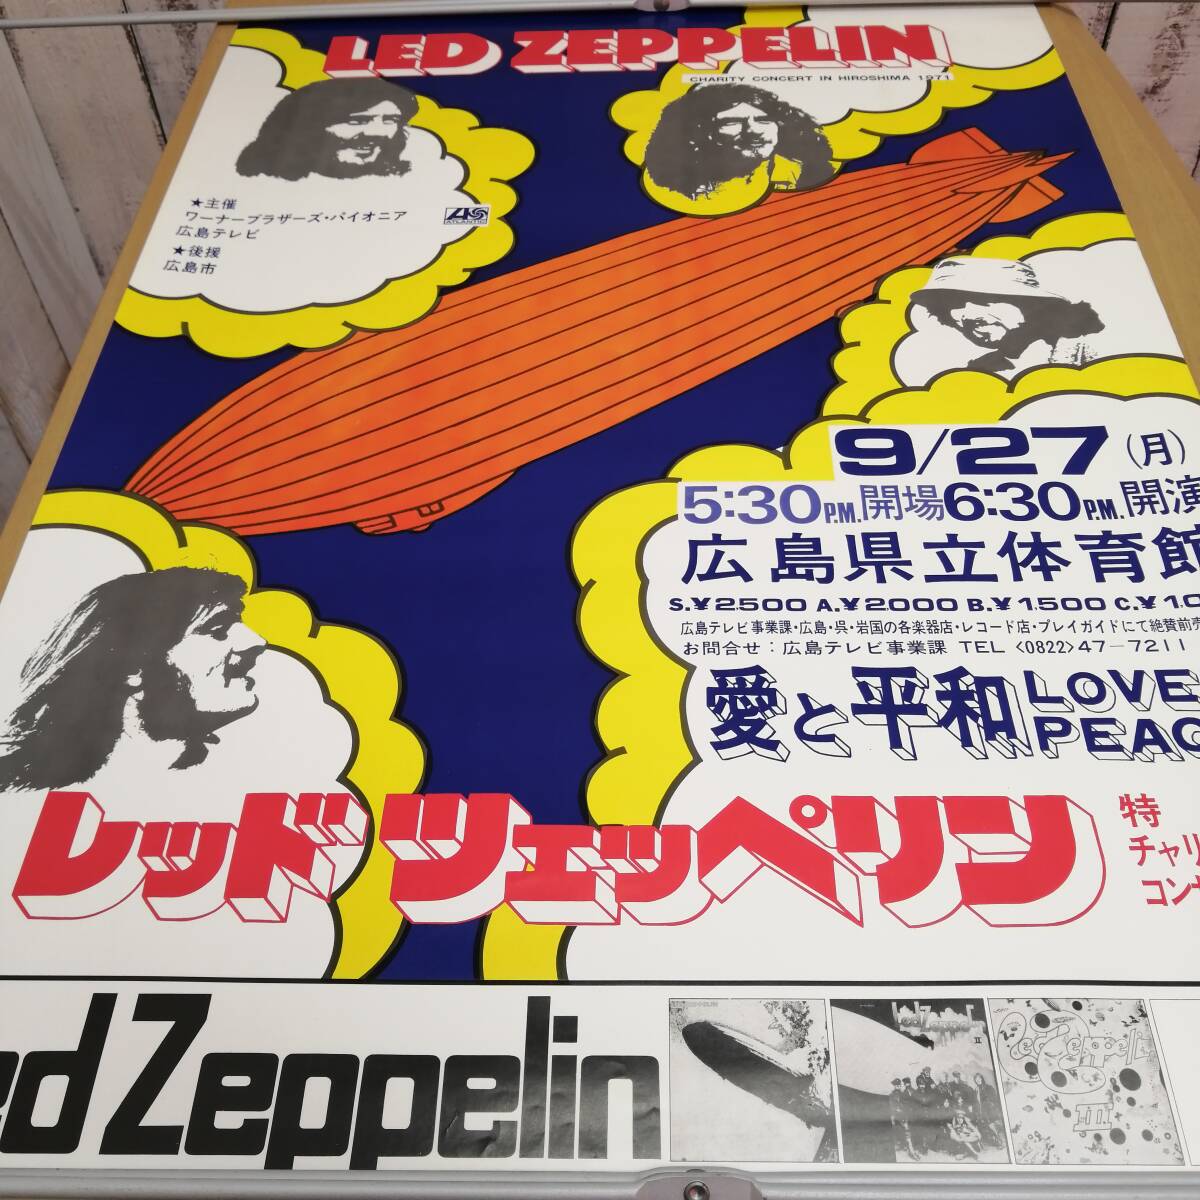 ○24031412 古いポスター レッド・ツェッペリン Led Zeppelin 1971年 愛と平和・特別チャリティーコンサート 広島 定形外発送の画像2